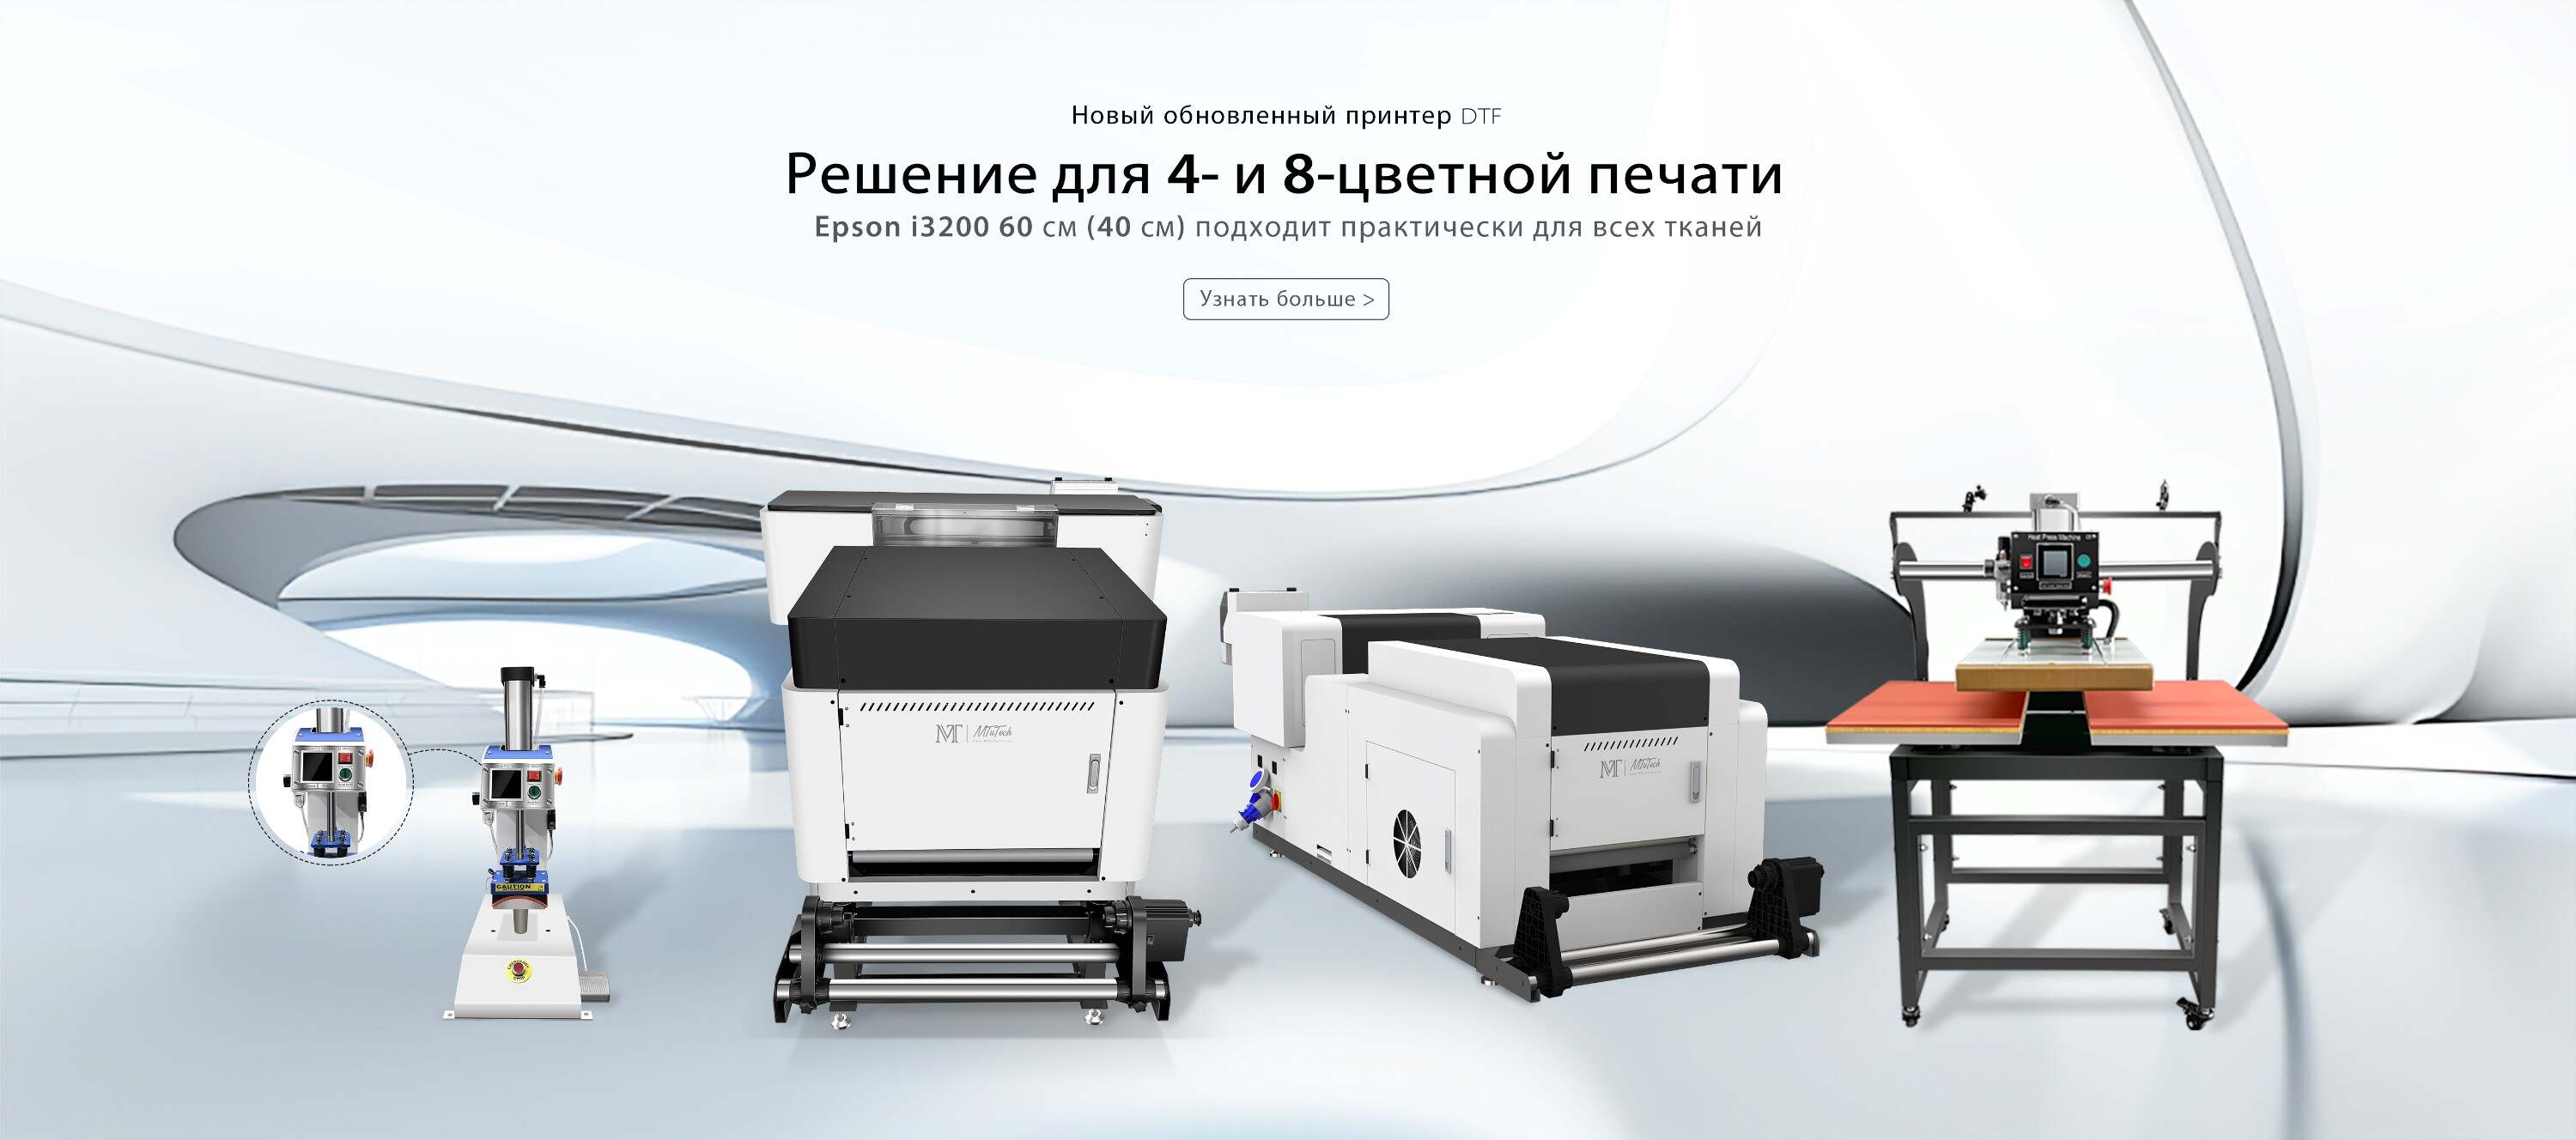 俄语首页轮播banner设计-DTF60+40-2